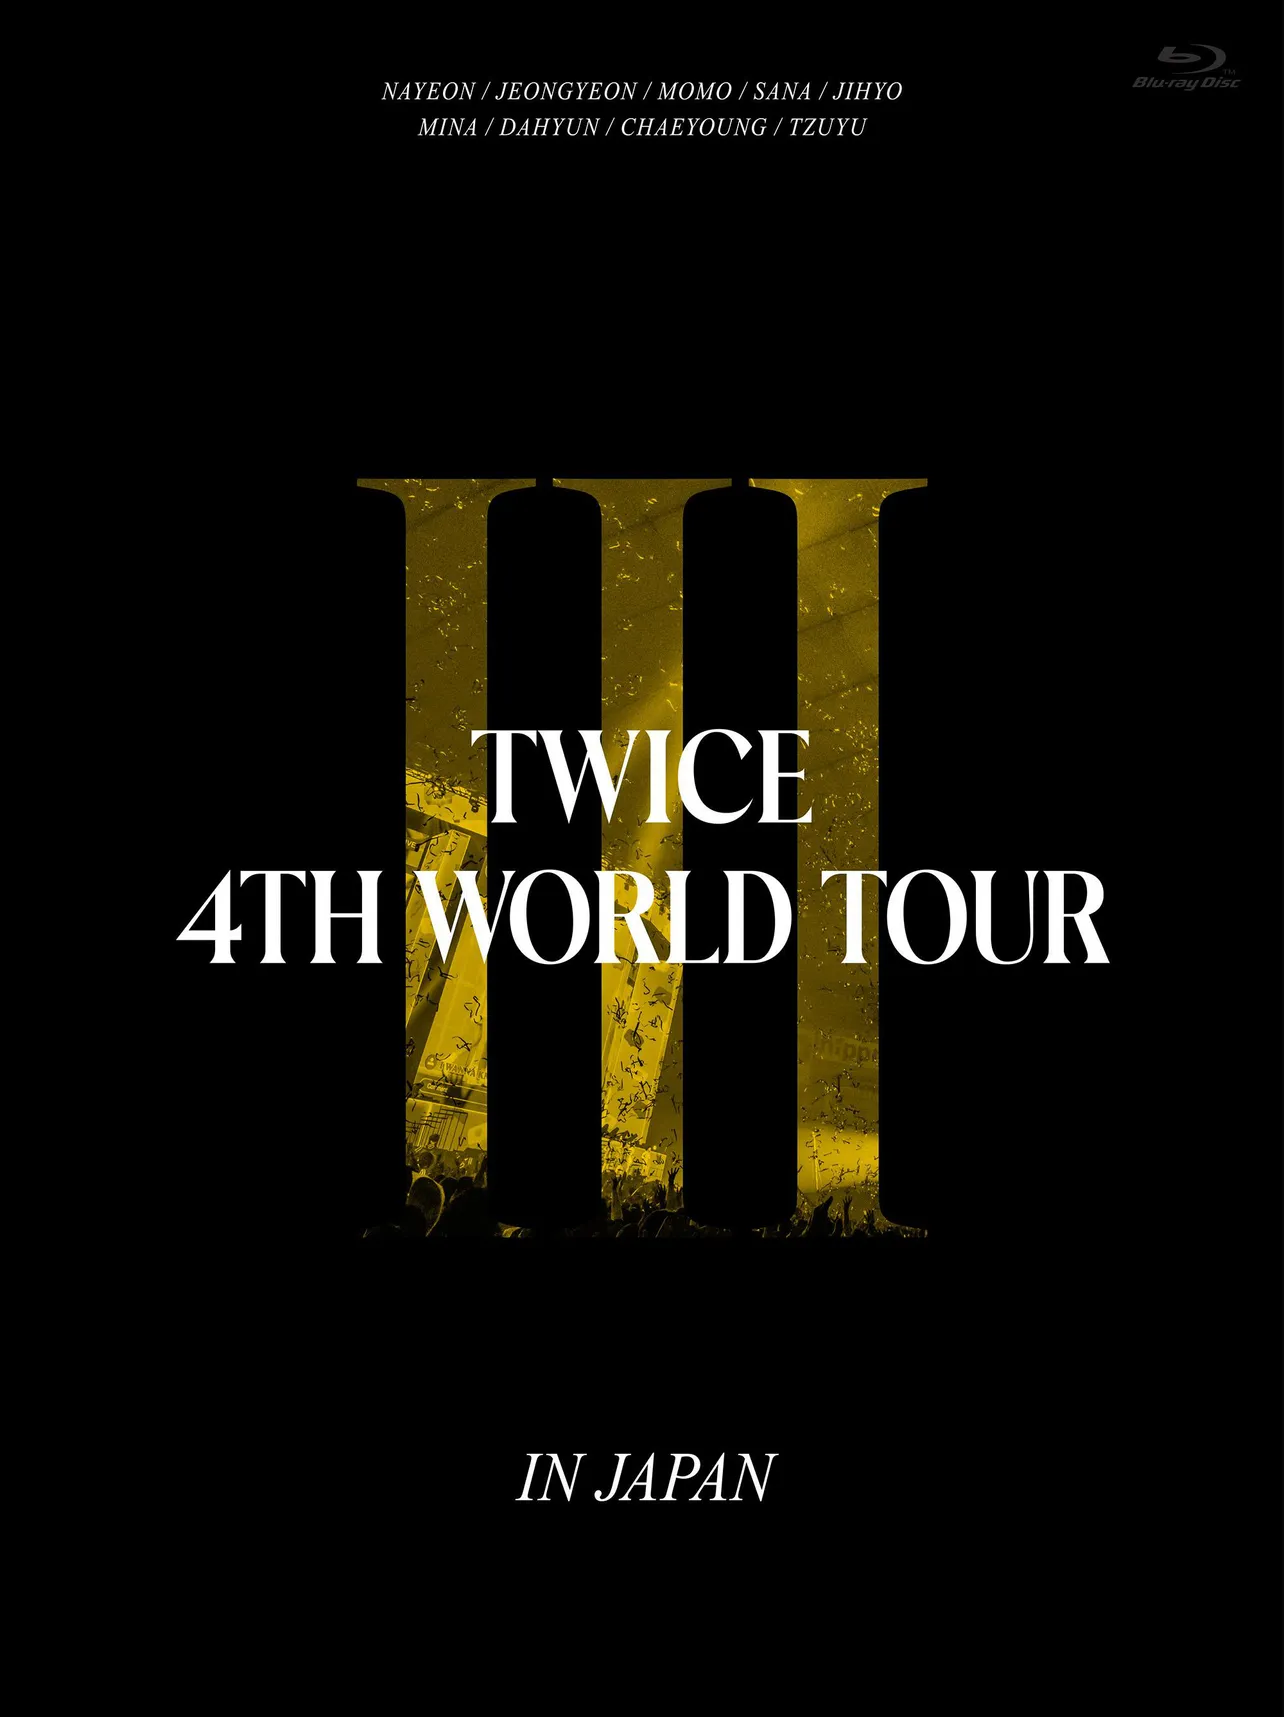 TWICE、ワールドツアー東京ドーム公演を映像化した「TWICE 4TH WORLD TOUR ’III’ IN JAPAN」リリース決定